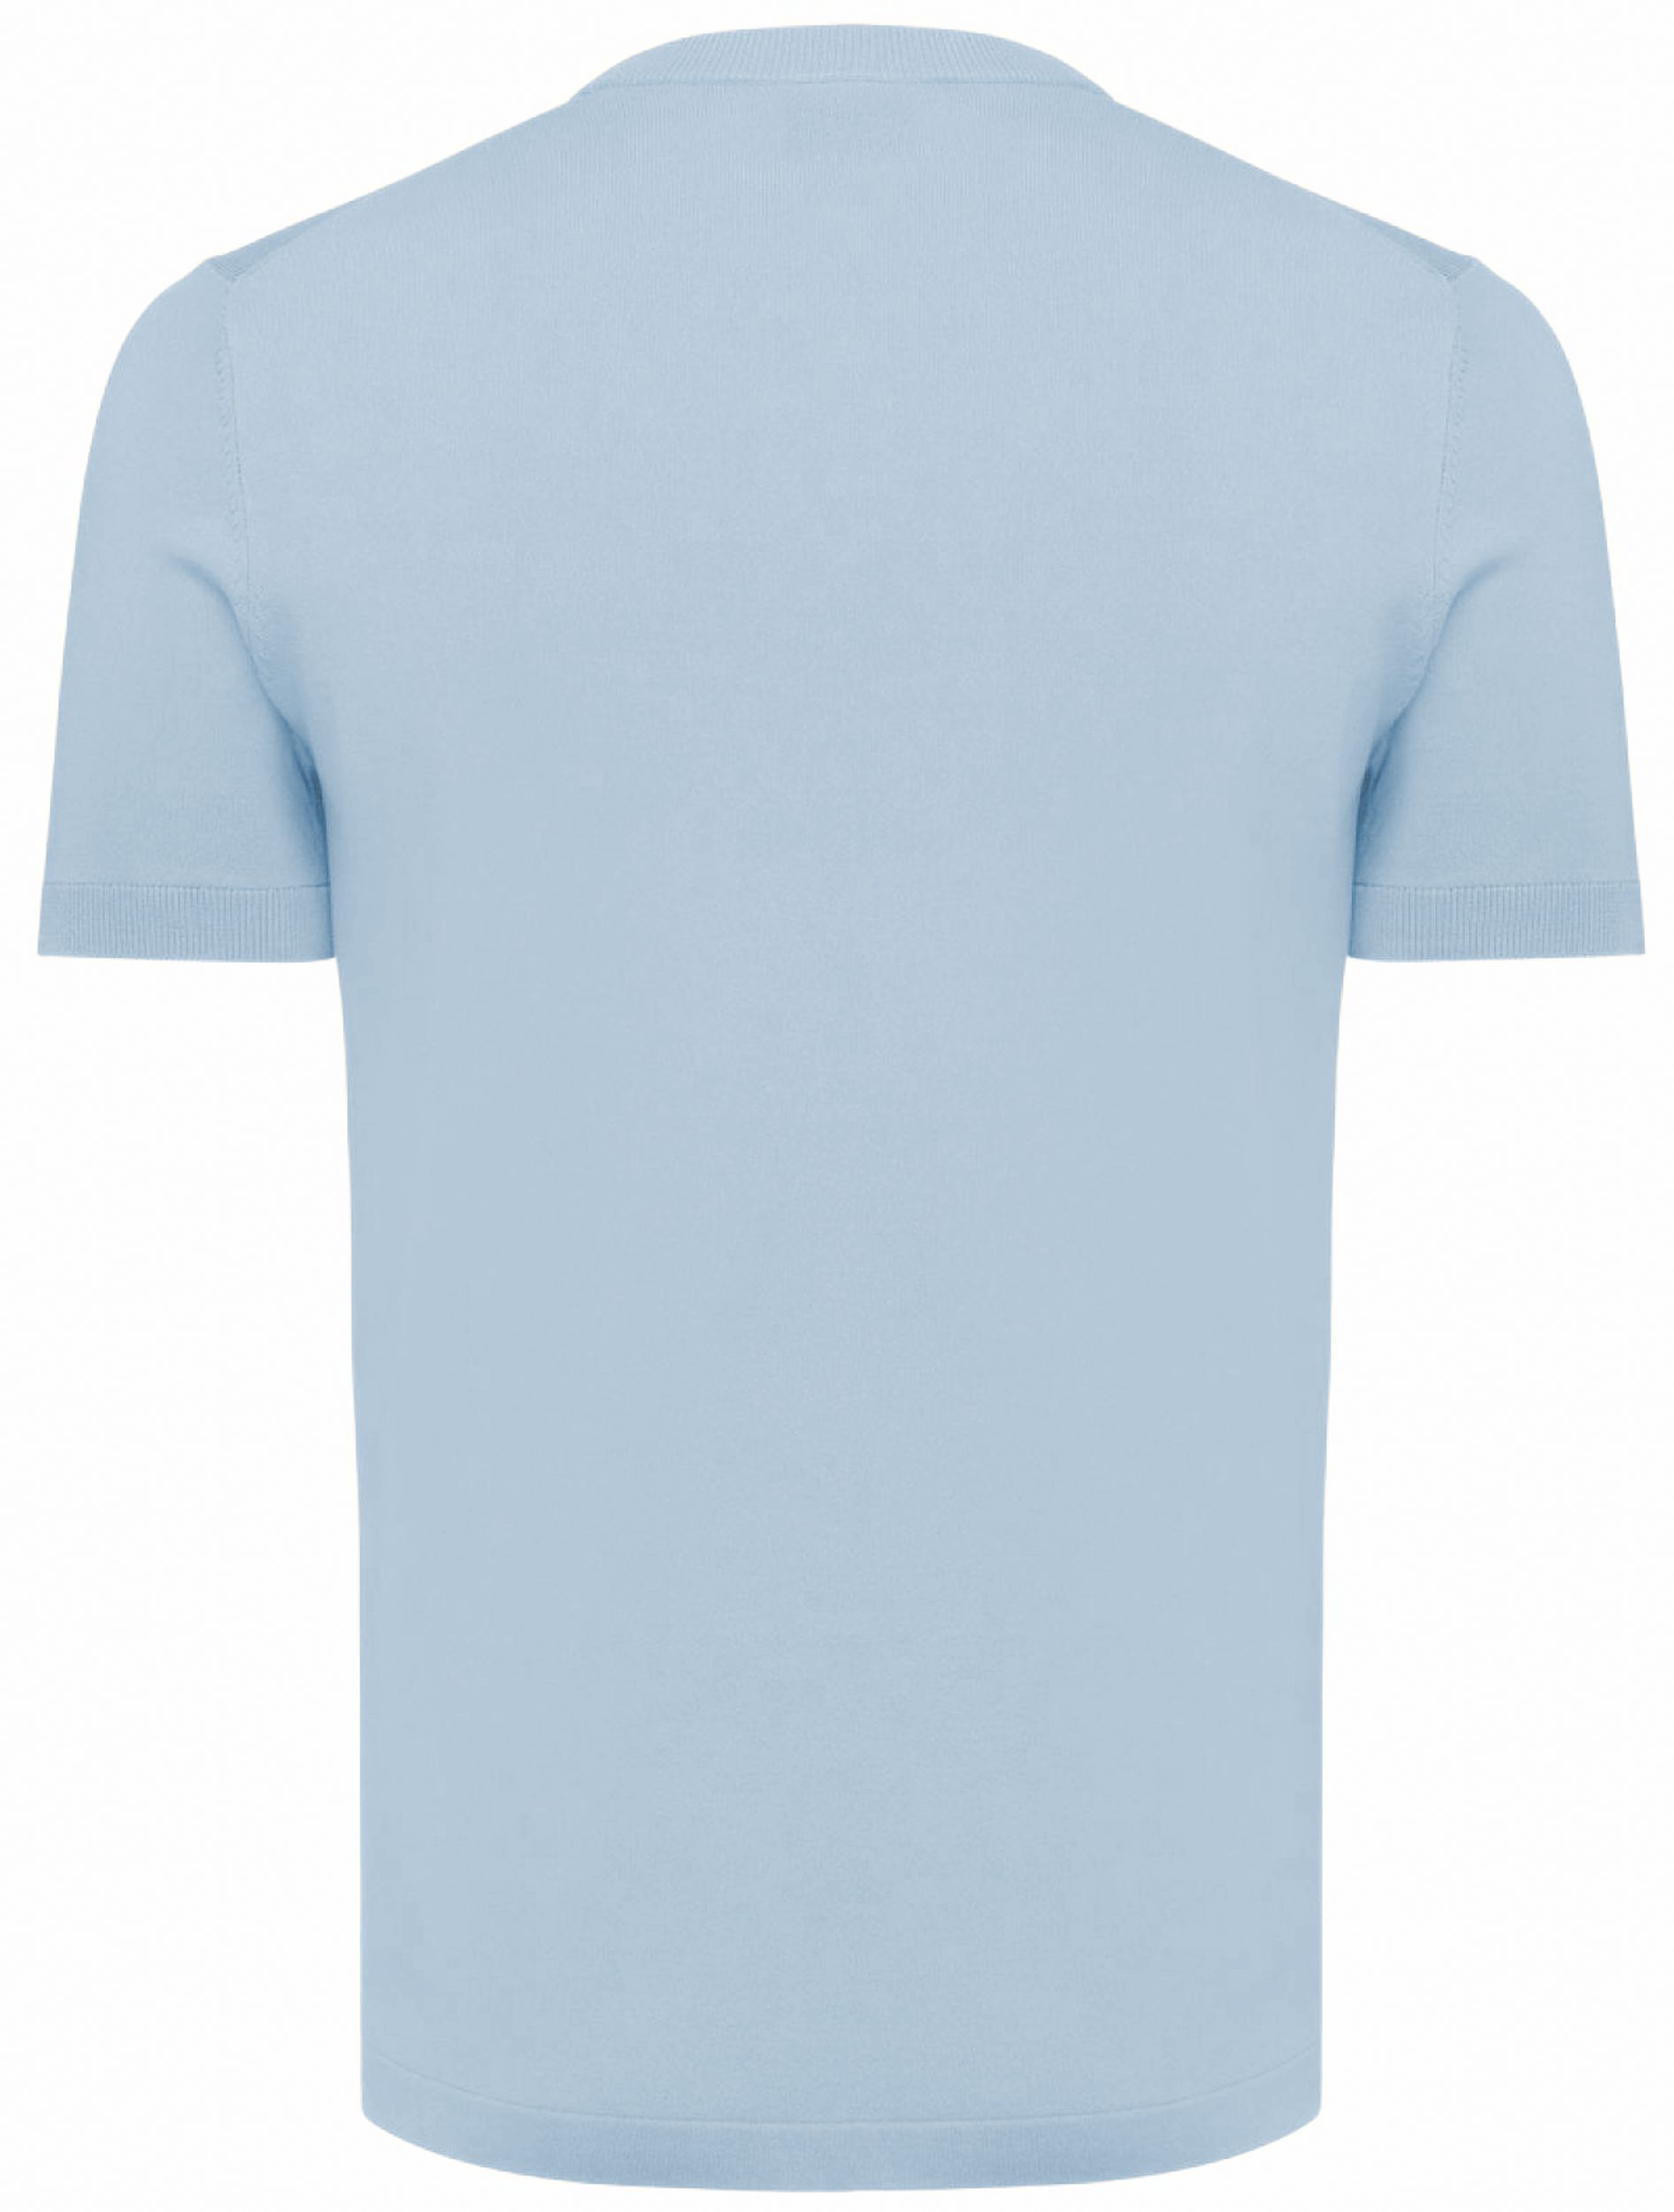 Genti T-shirt KM Licht blauw 092160-001-L